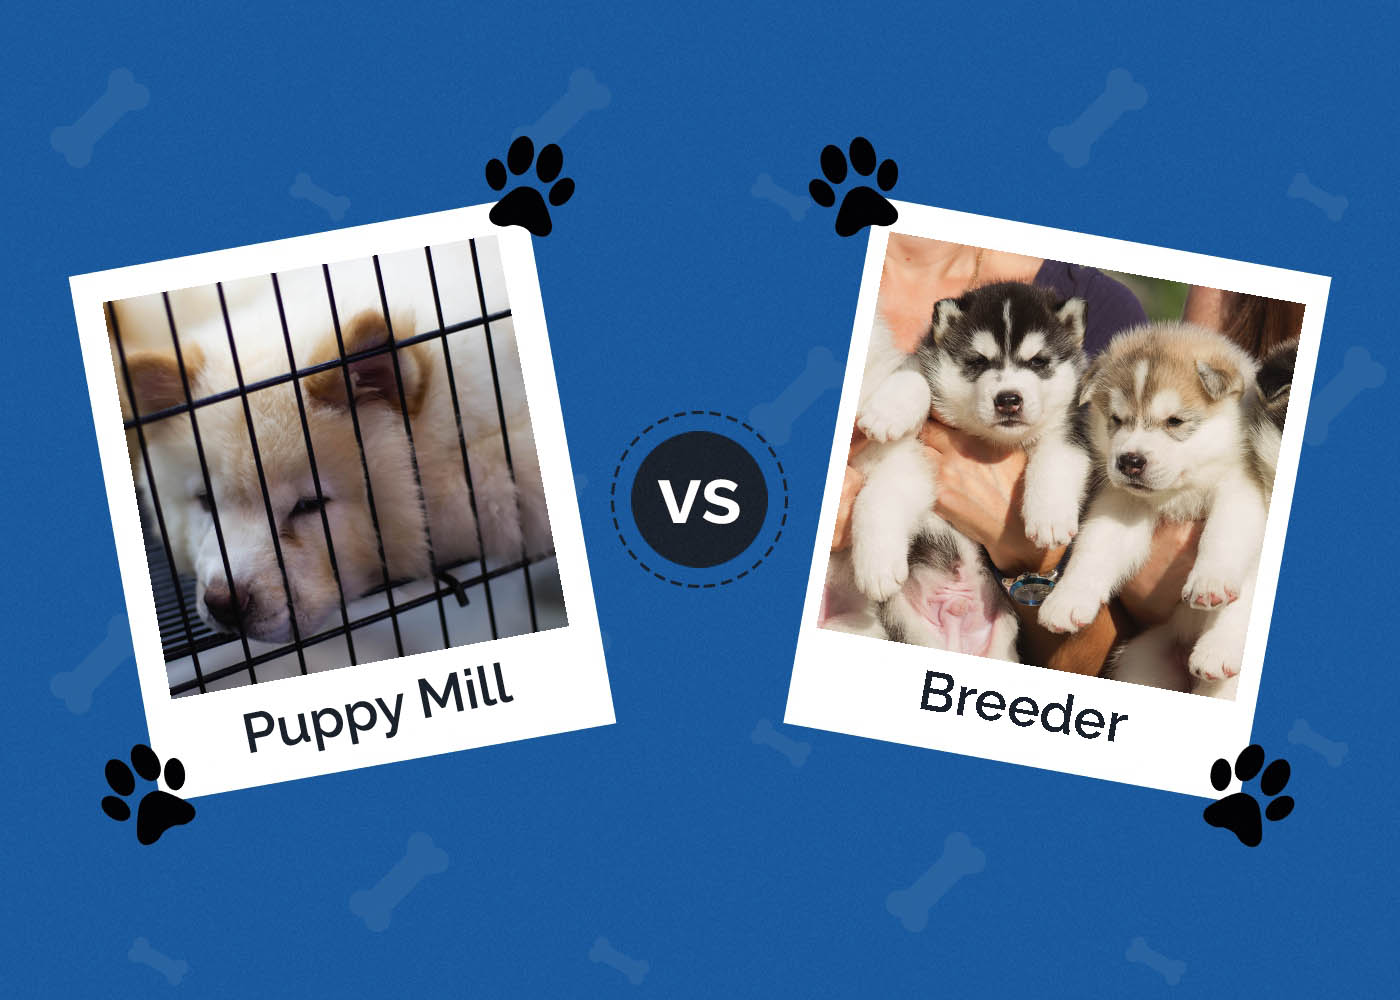 Puppy Mill vs Breeder